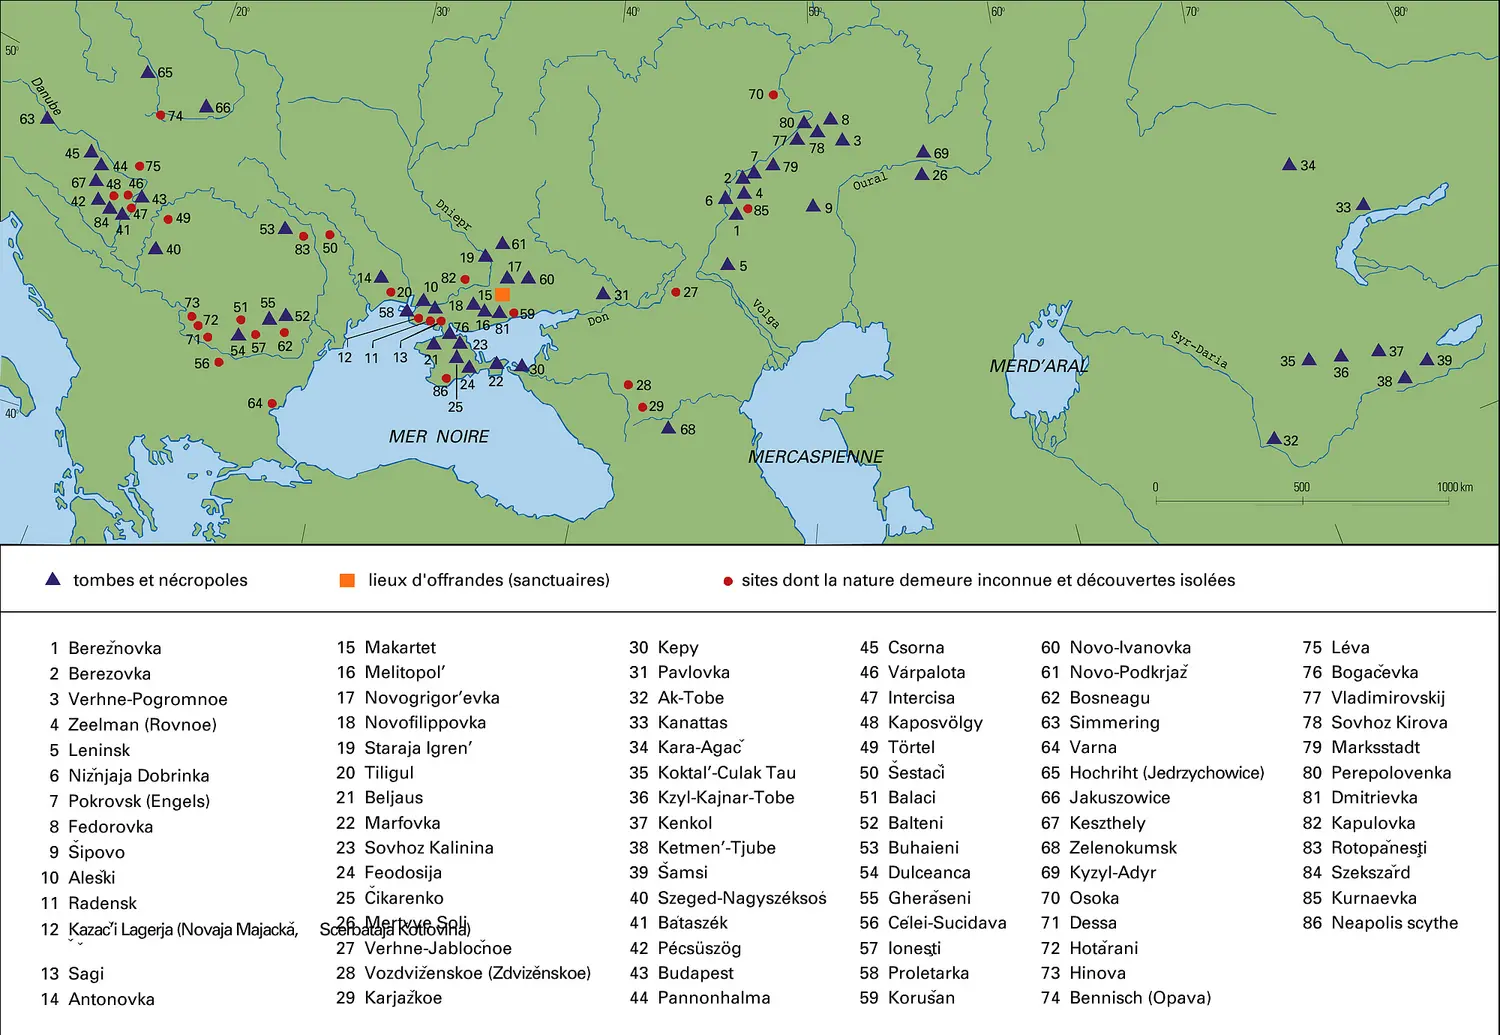 Sites des nomades de l'époque hunnique